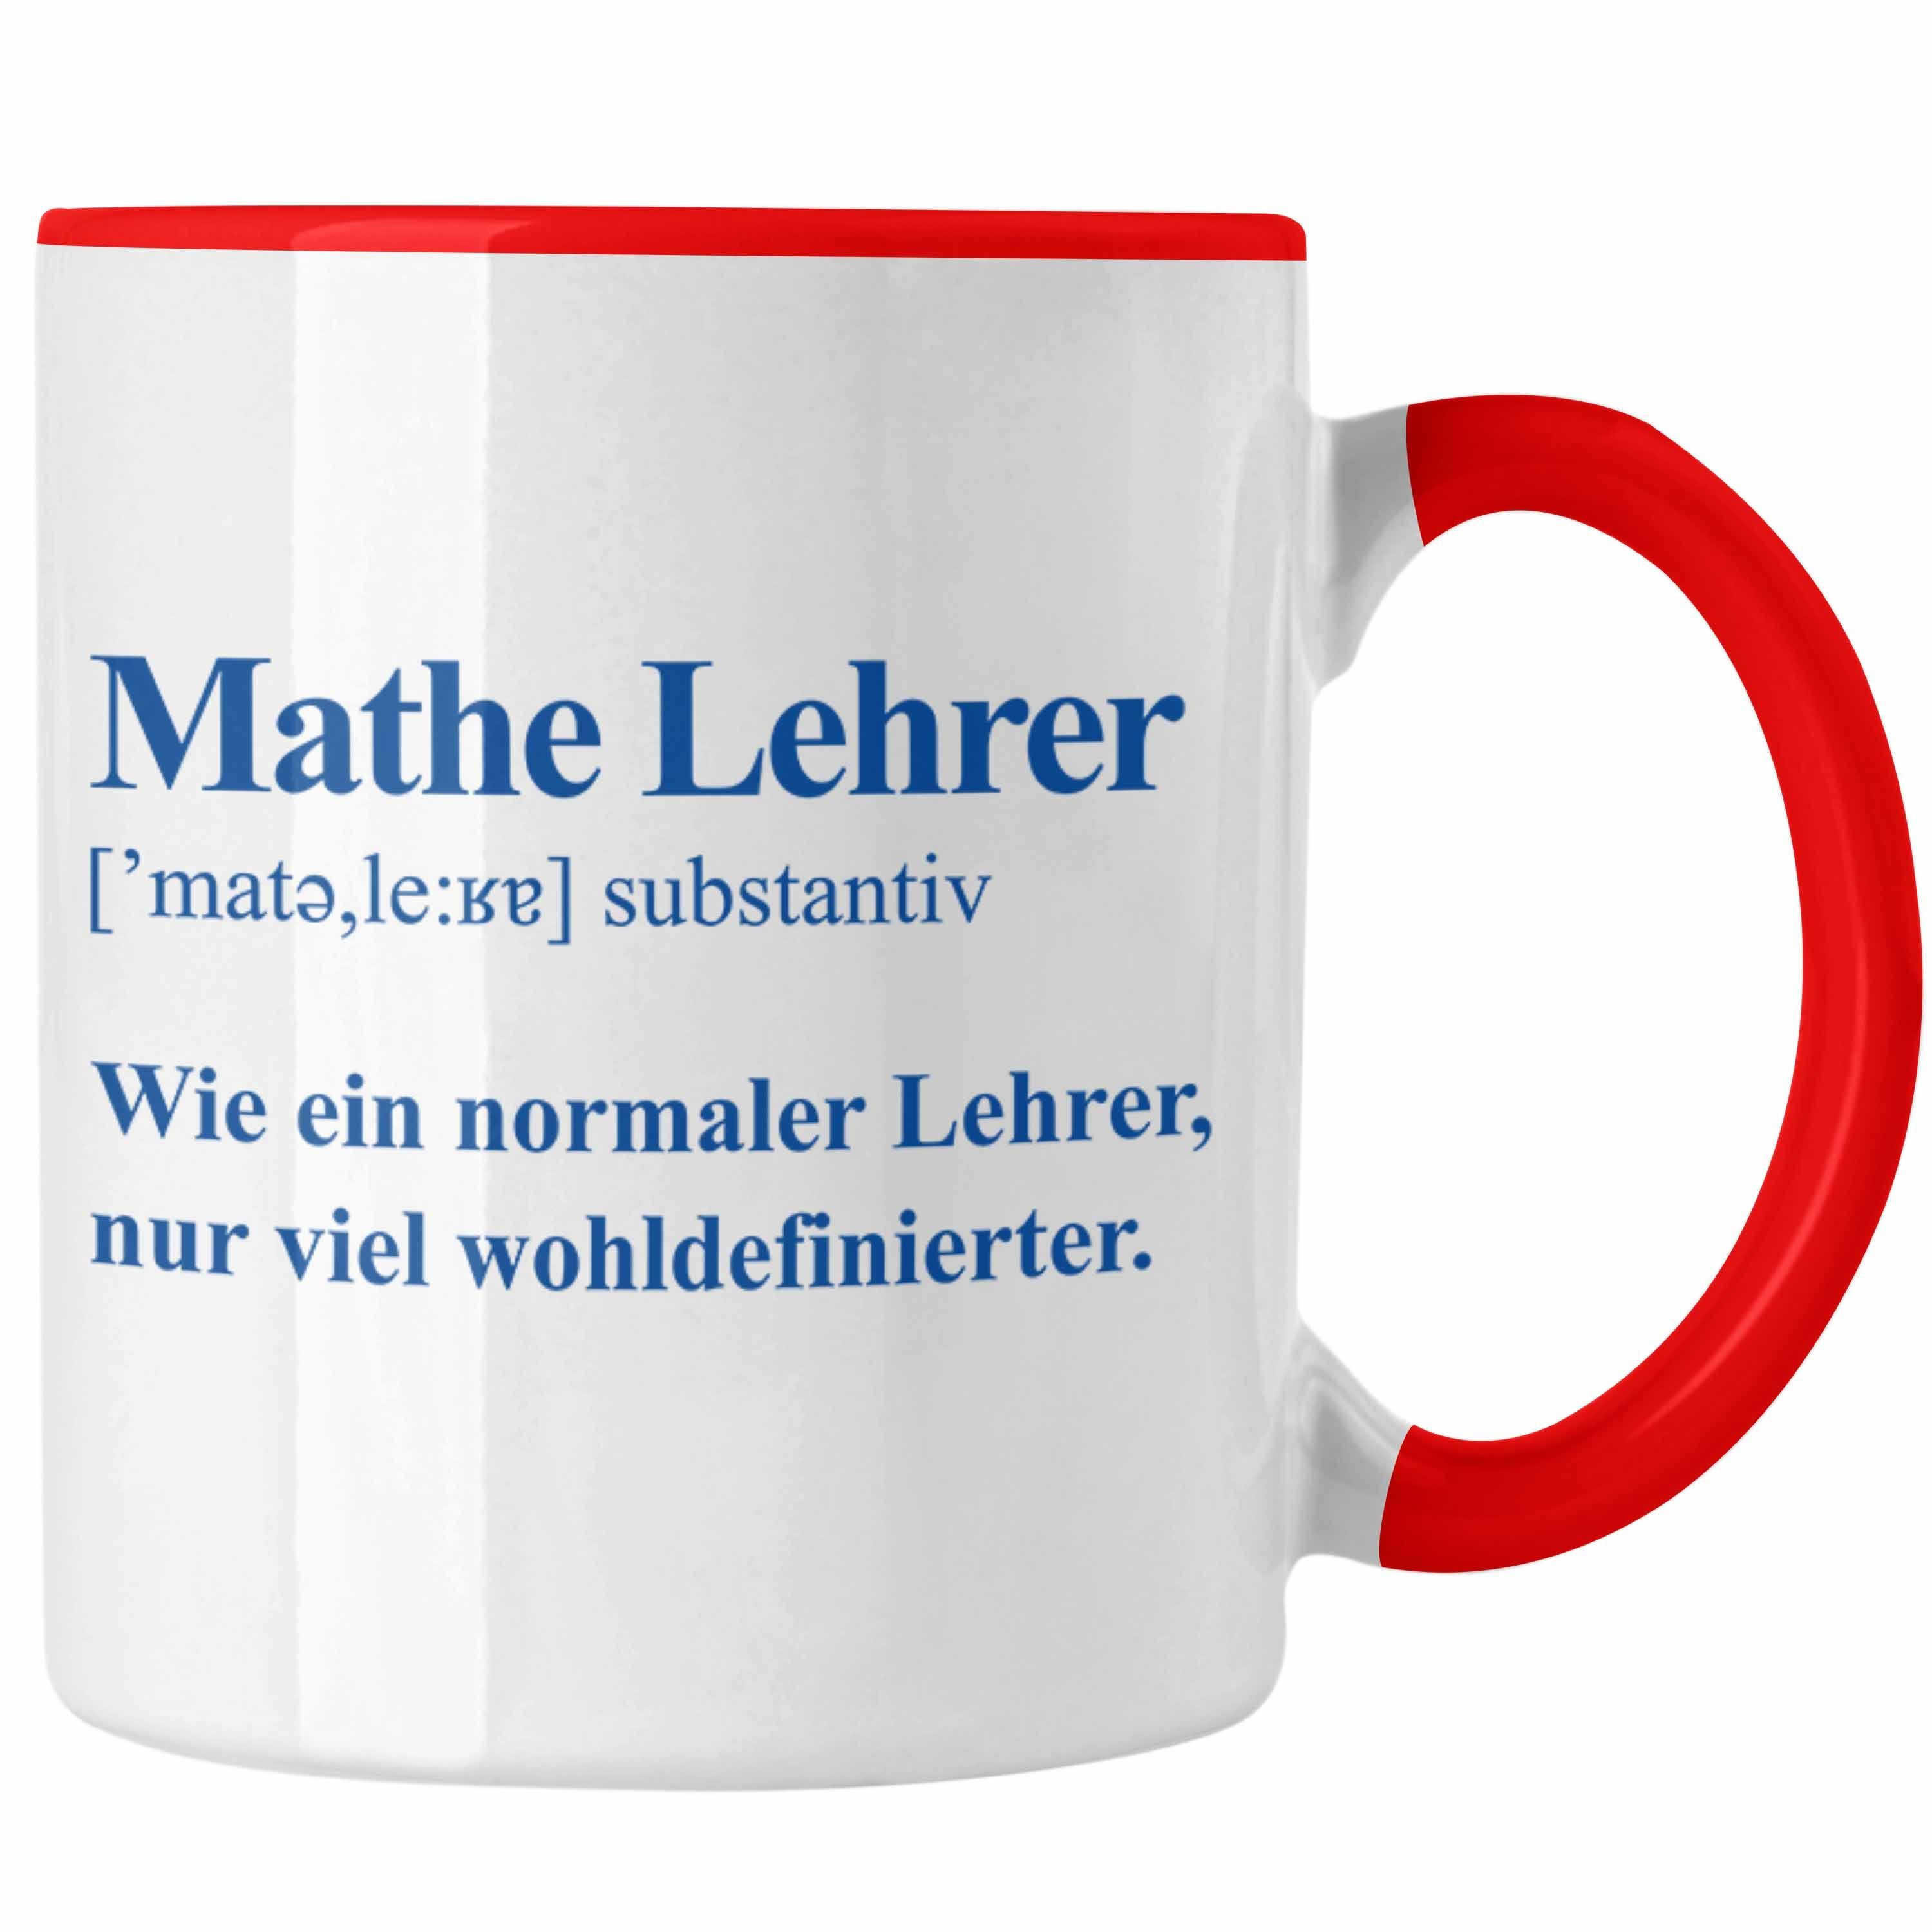 Trendation Tasse Trendation - Mathelehrer Tasse Mathematiker Tassen mit Spruch Lustig Kaffeetasse Geschenk Mathe Lehrer Rot